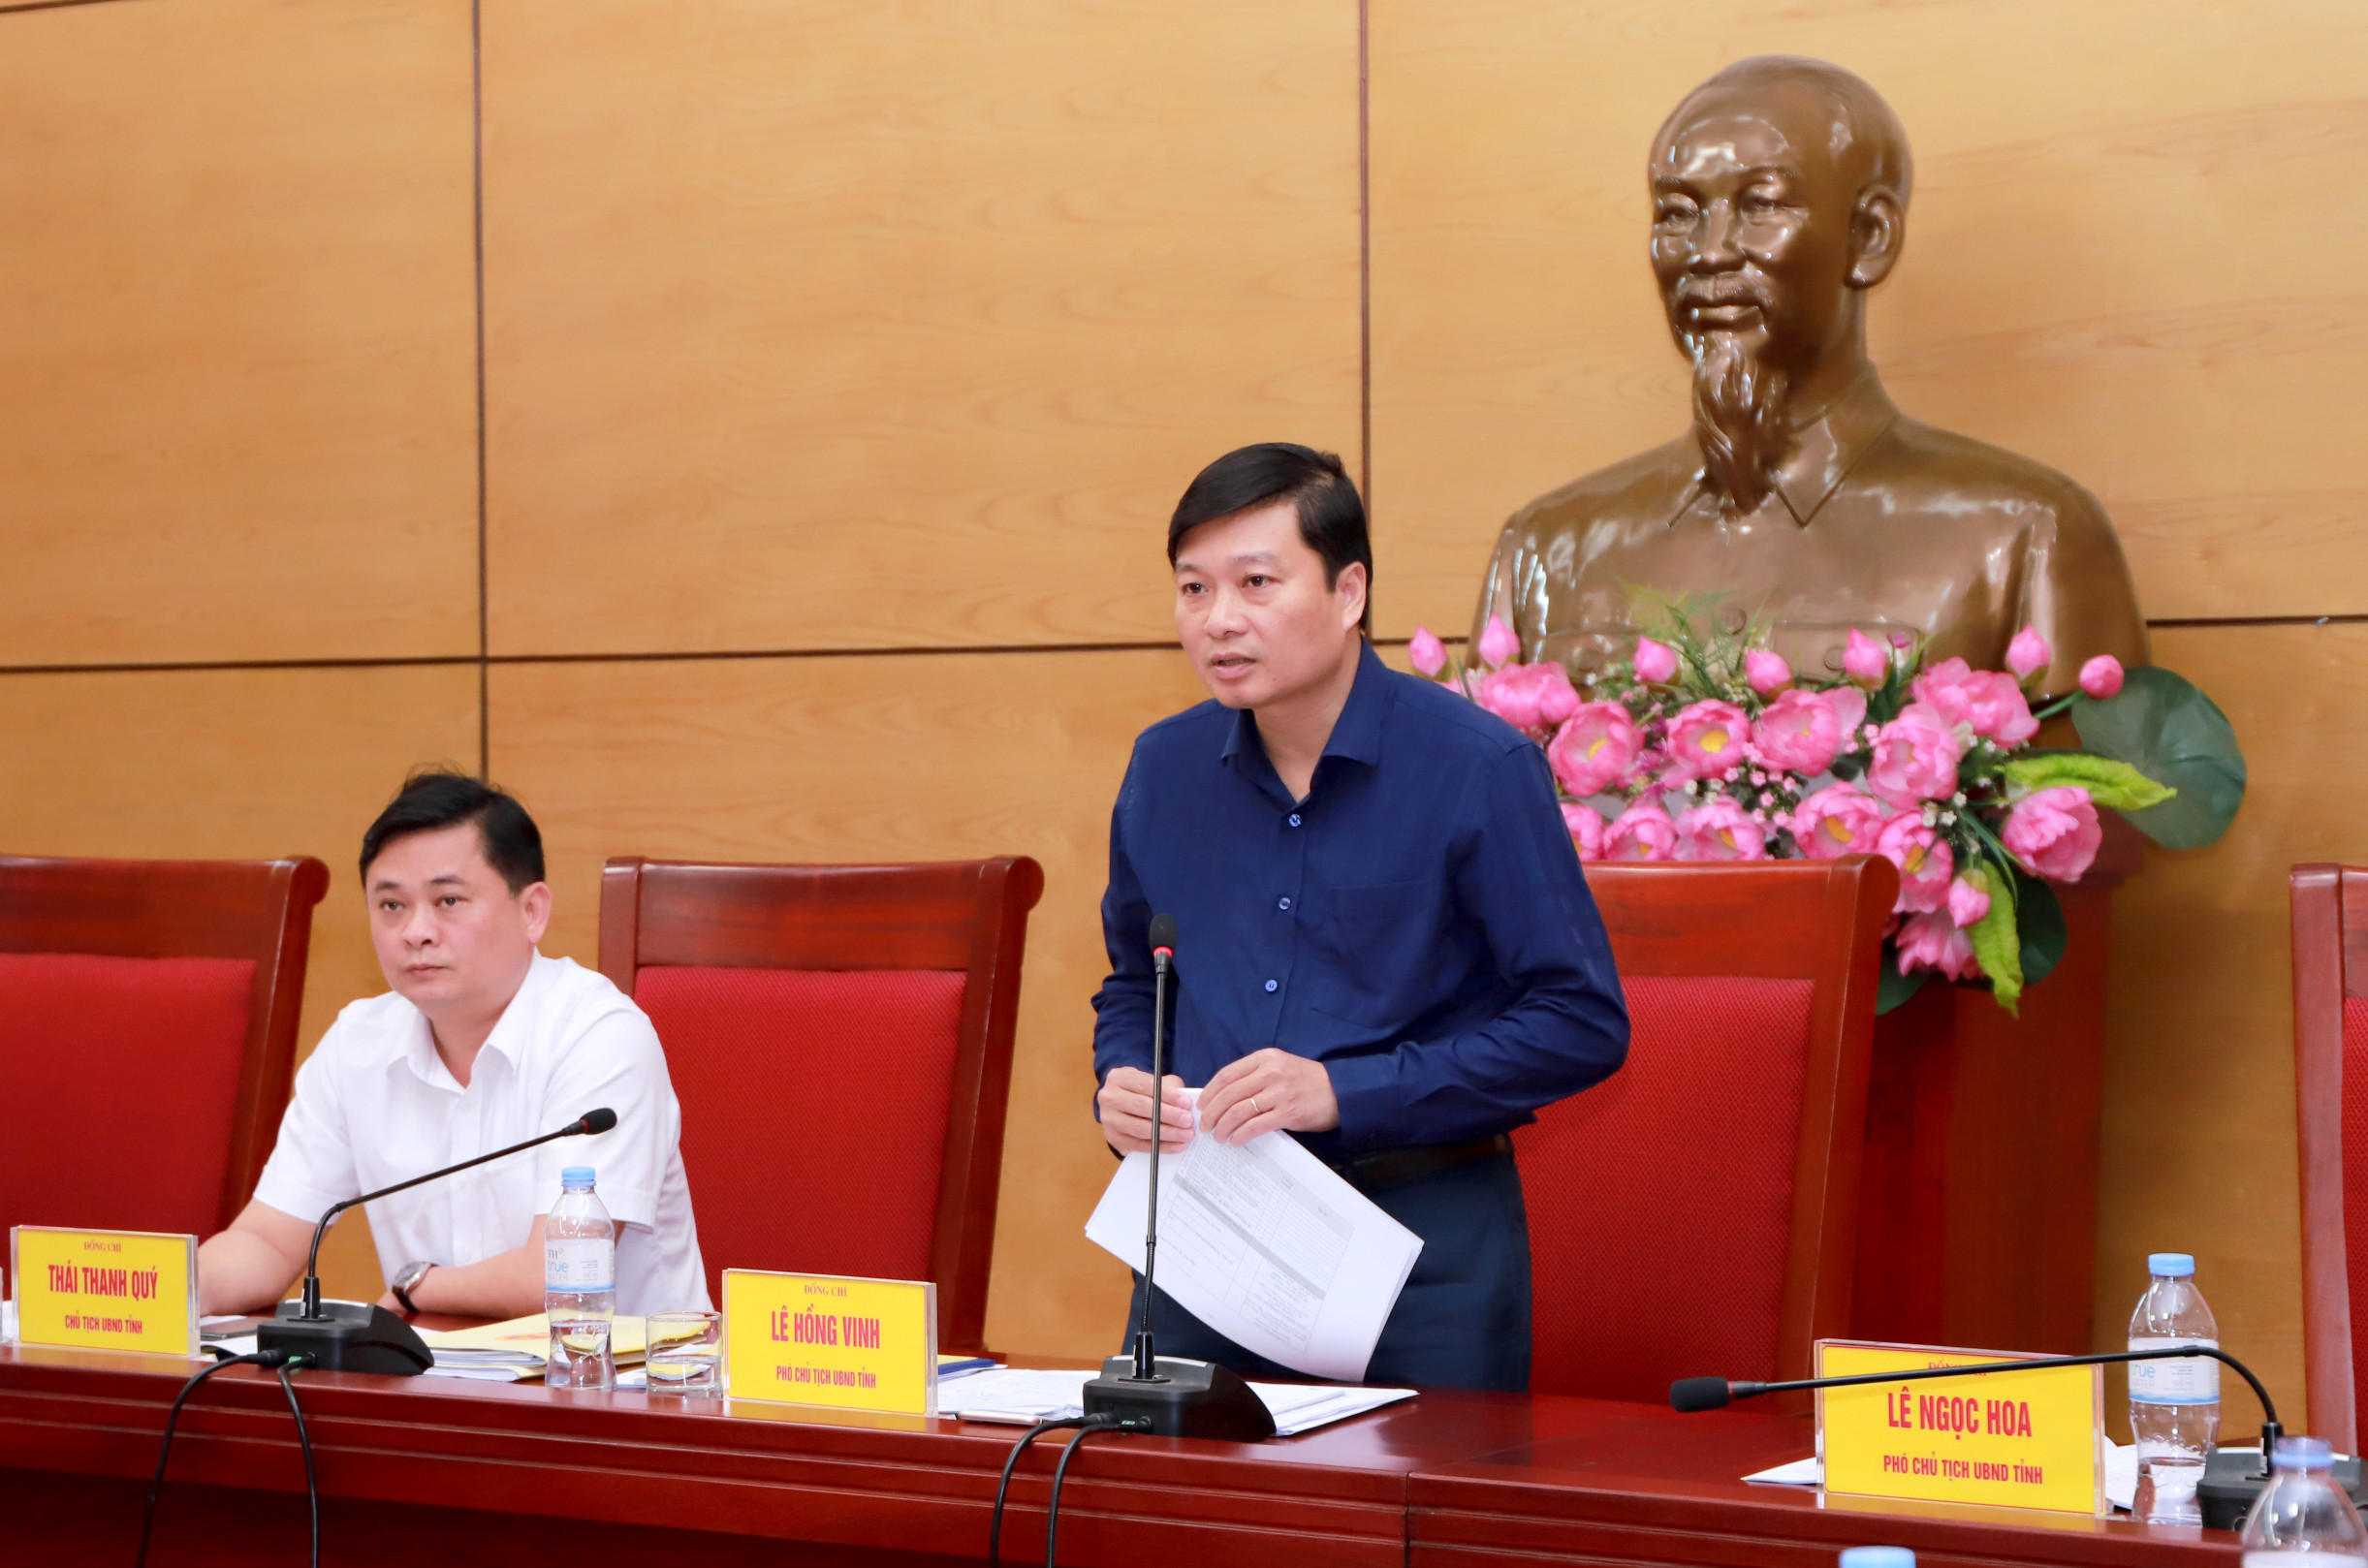 Phó Chủ tịch UBND tỉnh Lê Hồng Vinh phát biểu tại cuộc làm việc. Ảnh: Thành Duy